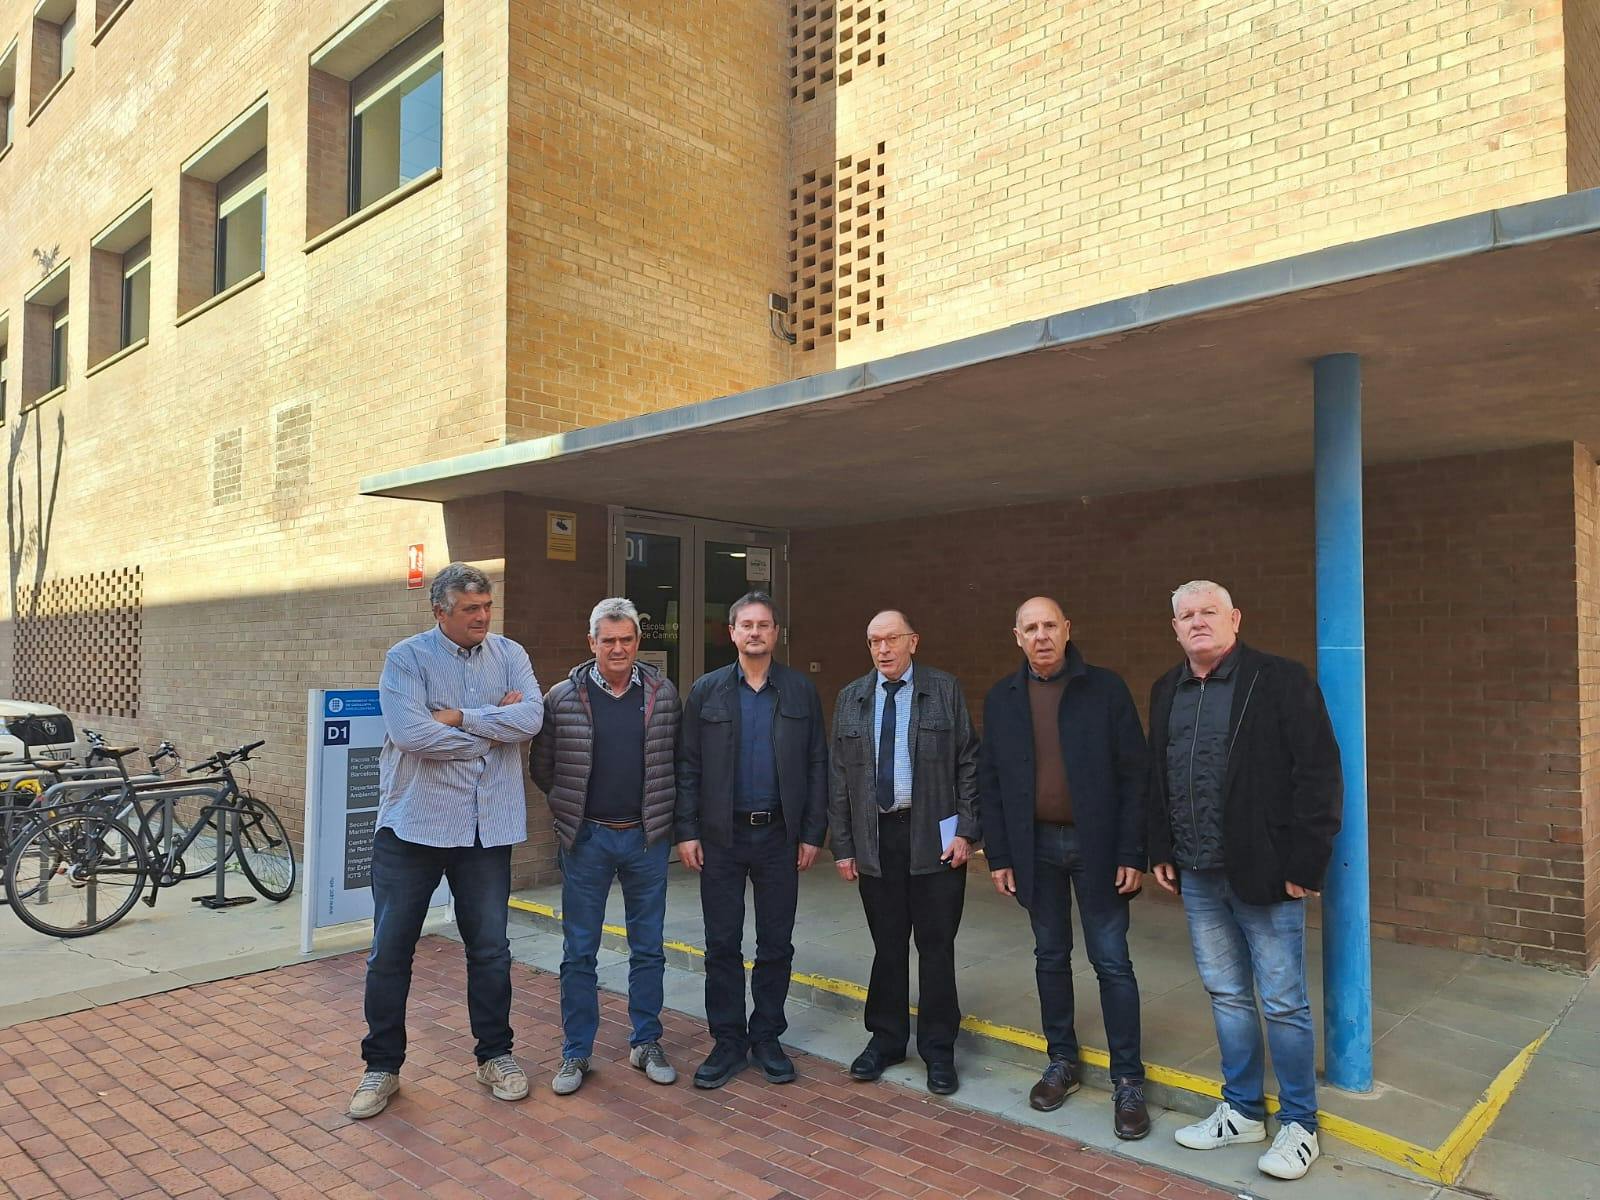 Representants de l'Ajuntament de l'Ampolla visiten el Laboratori d'Enginyeria Marítima de la UPC